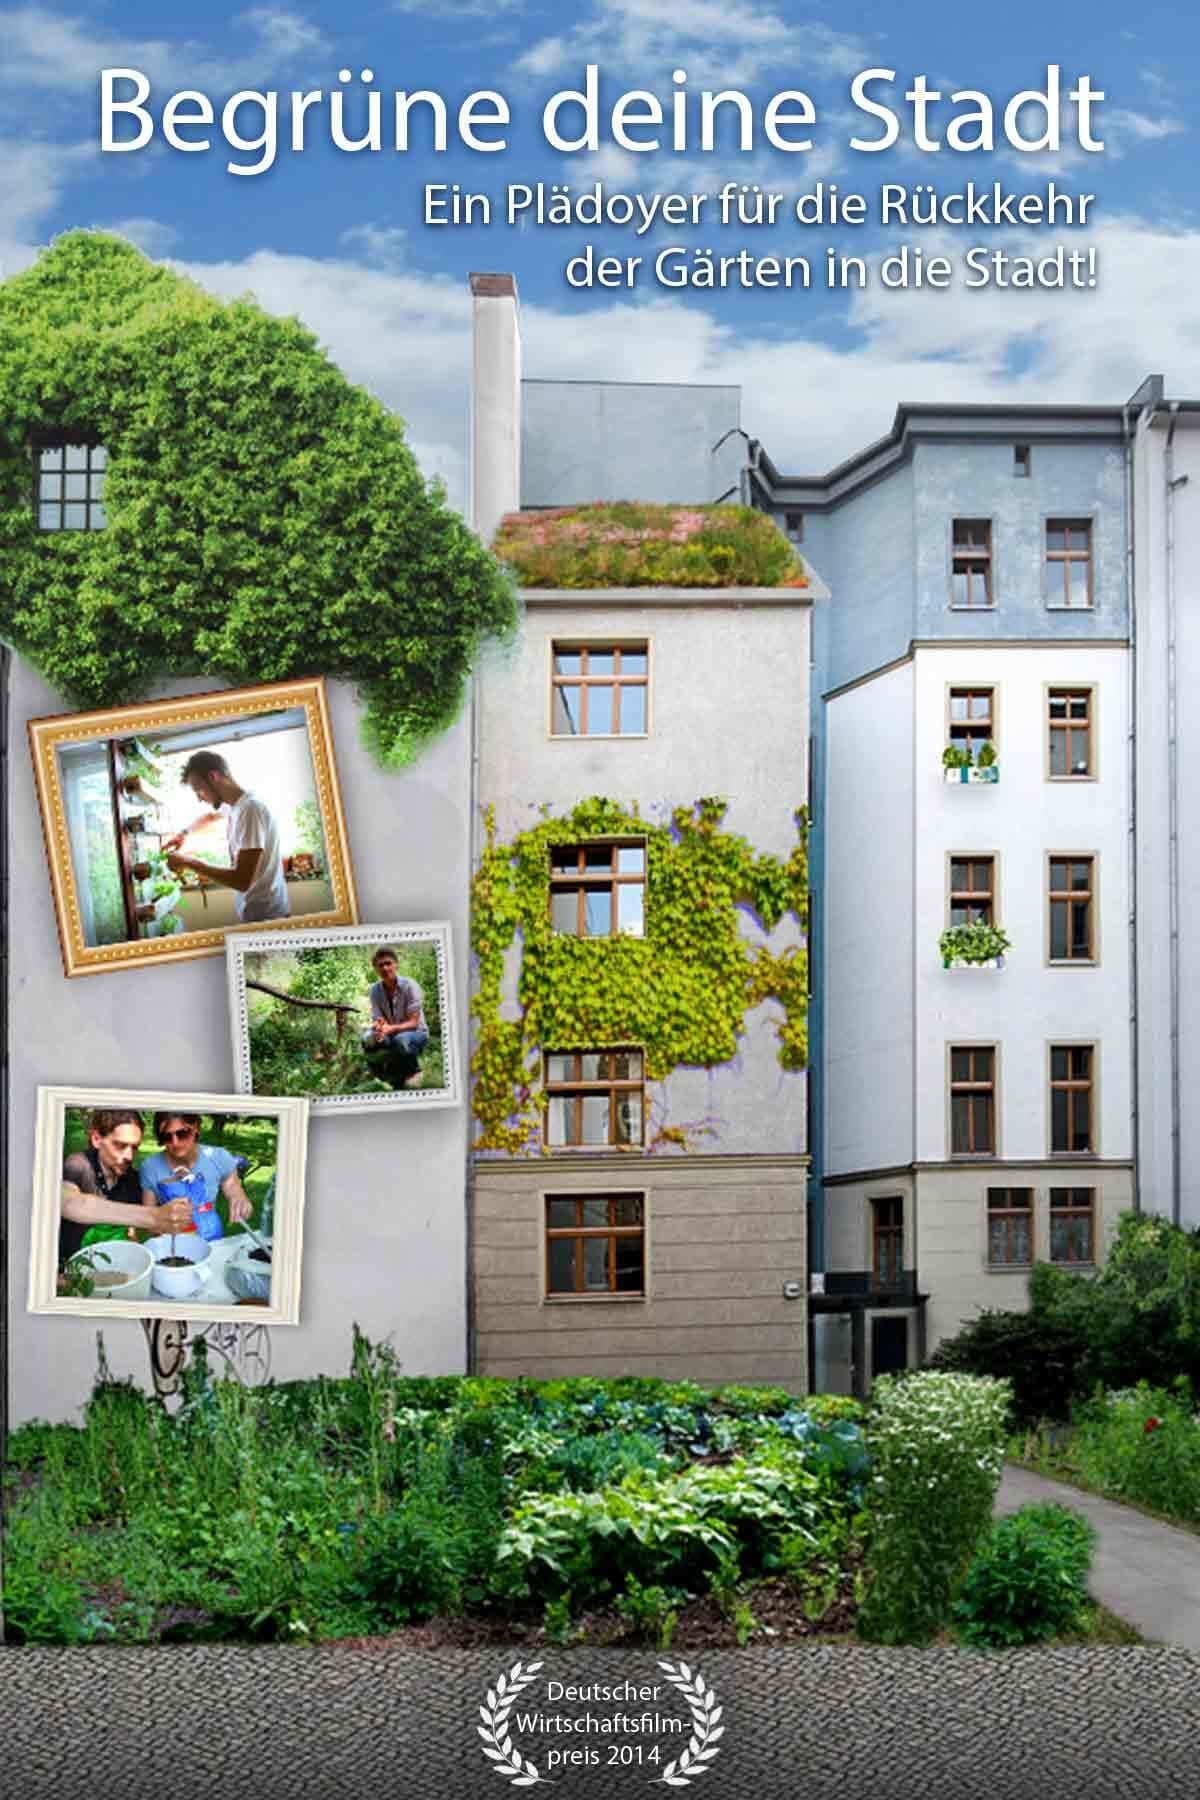 Begrüne Deine Stadt - Ein Plädoyer für die Rückkehr der Gärten in die Stadt!